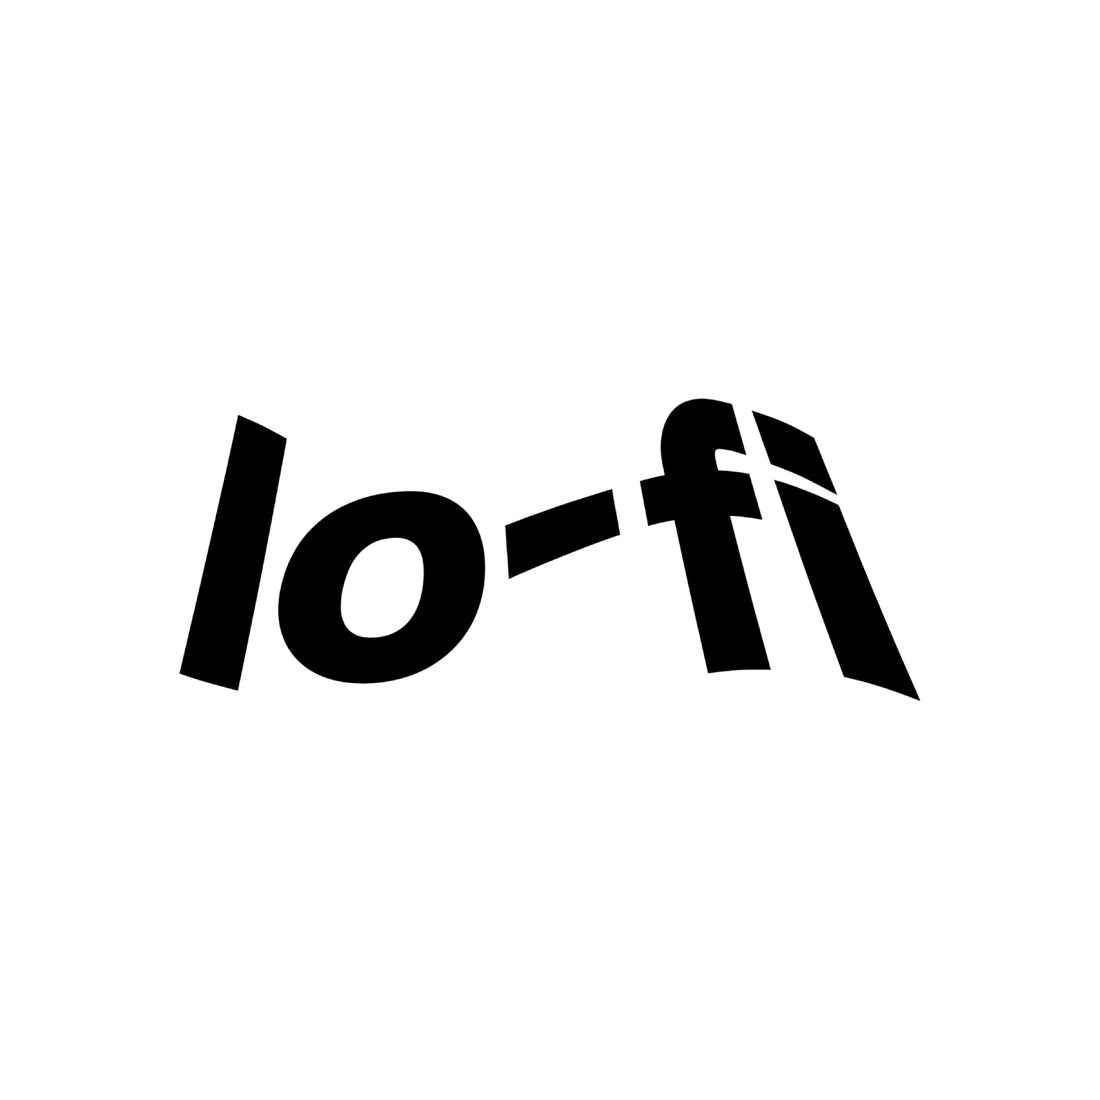  Lo-Fi